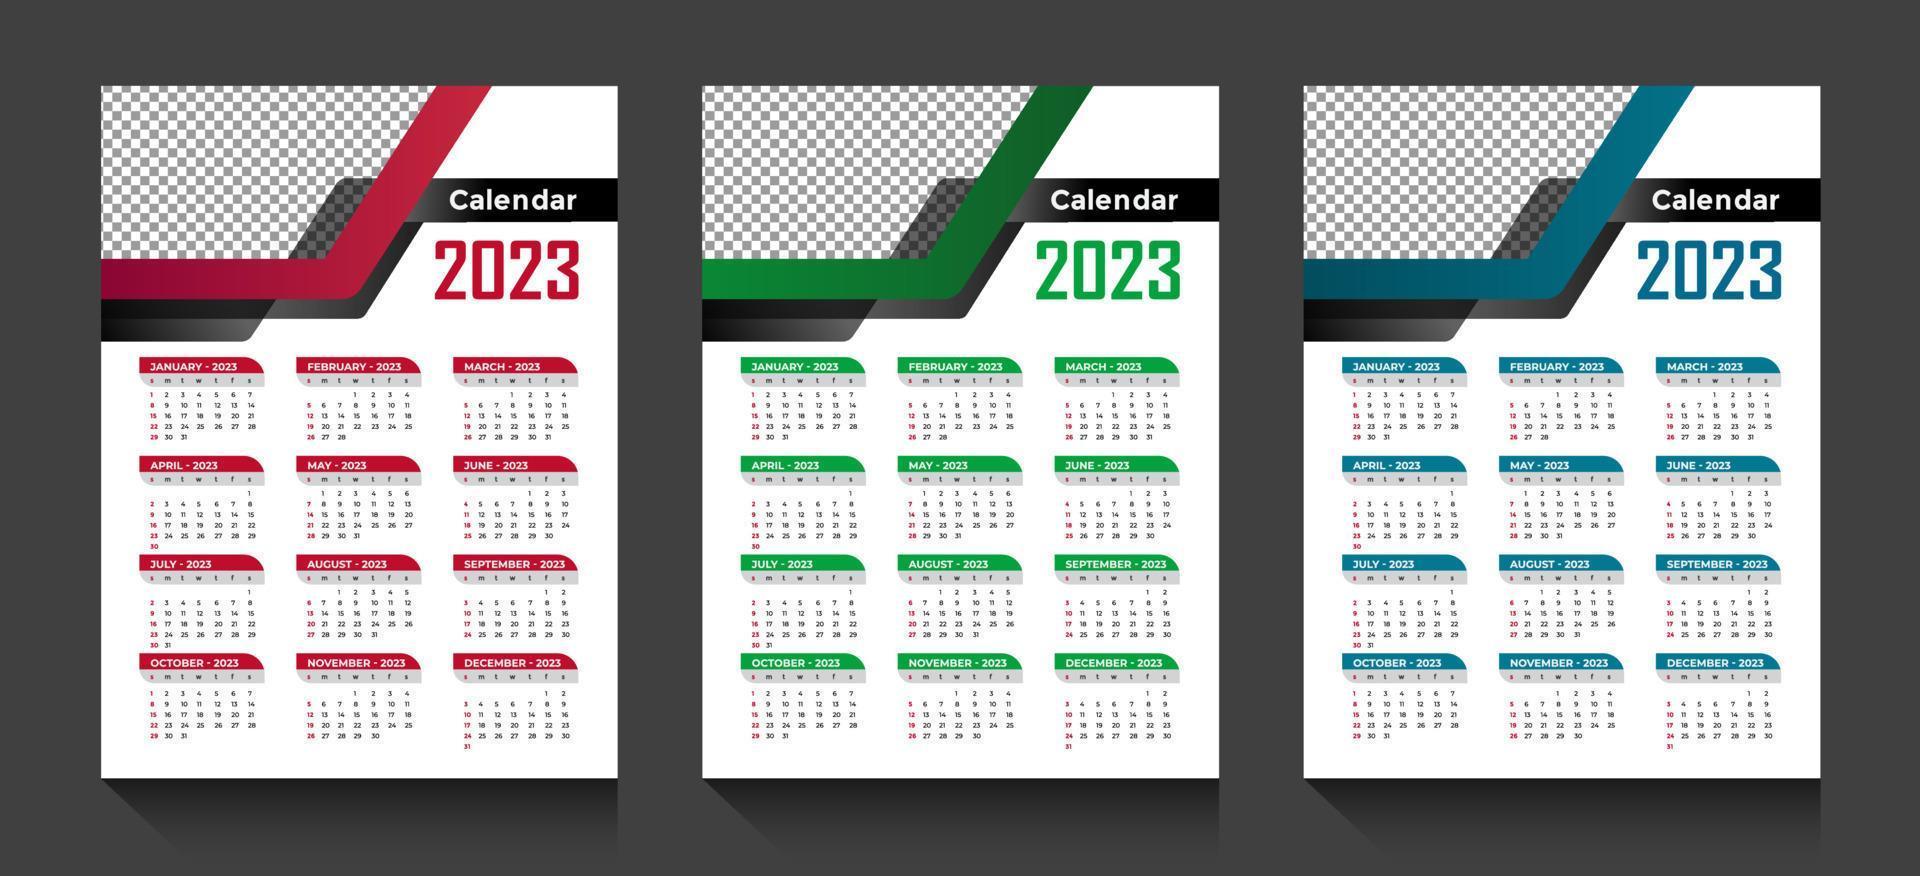 le vecteur de calendrier de l'année 2023 avec des formes abstraites et une conception de calendrier d'affaires minimal de couleur bleue pour la nouvelle année calendrier du nouvel an 2023 avec calcul du week-end la semaine commence le dimanche